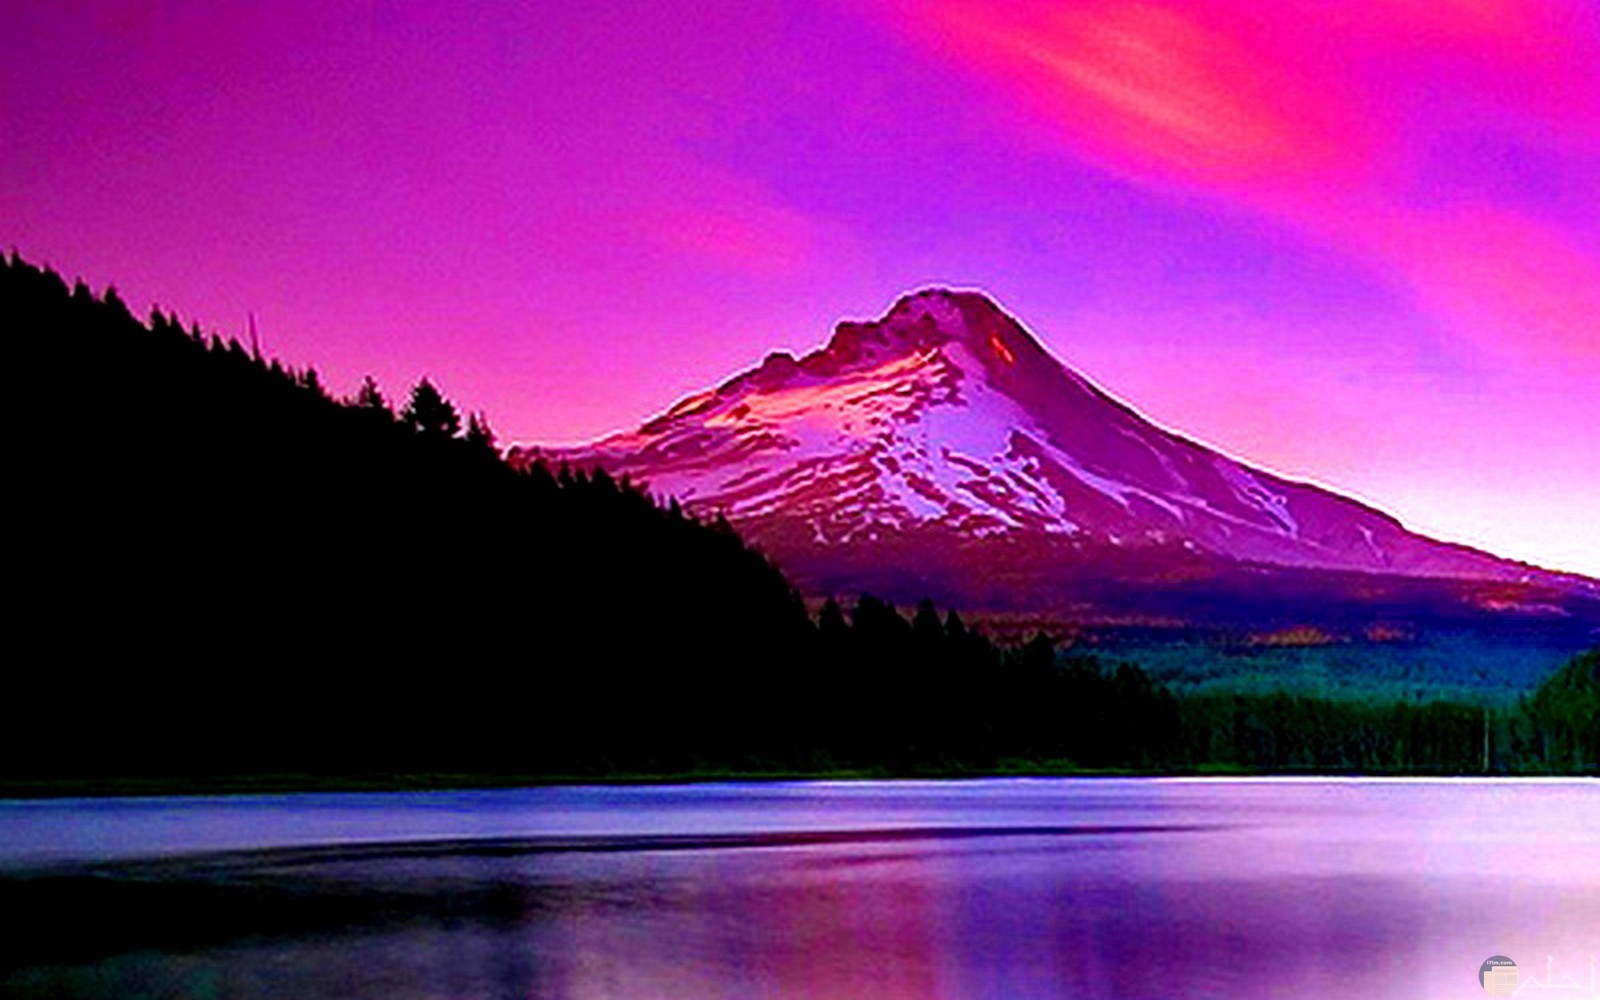 منظر طبيعي باللون البنفسجي للجبال و البحر.